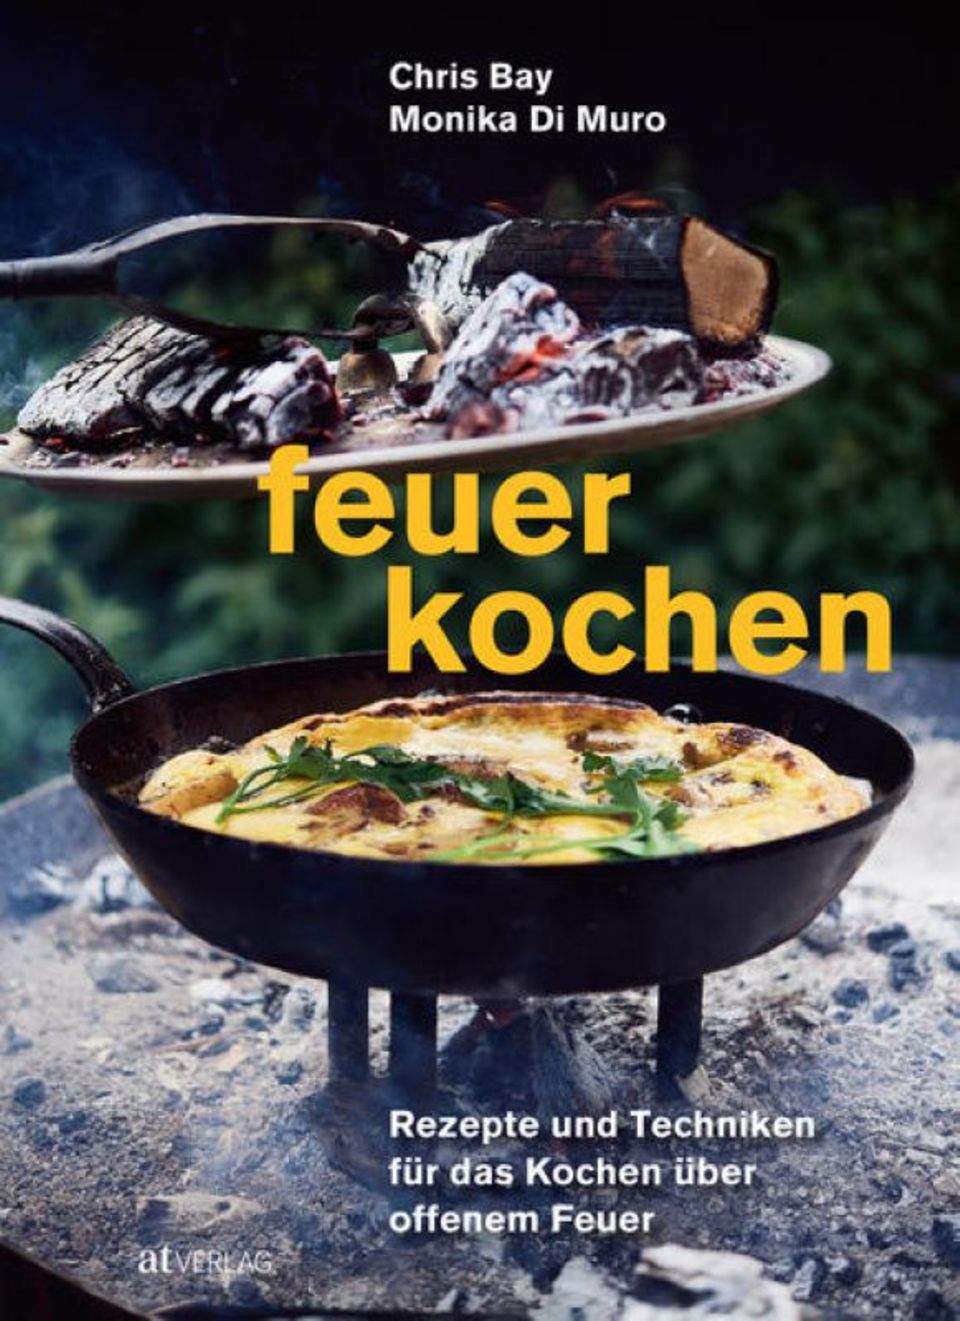 Alles, was Sie übers Feuerkochen wissen wollen, lesen Sie hier: Feuerkochen von Monika di Muro und Chris Bay, AT Verlag. 304 Seiten. 44 Euro.